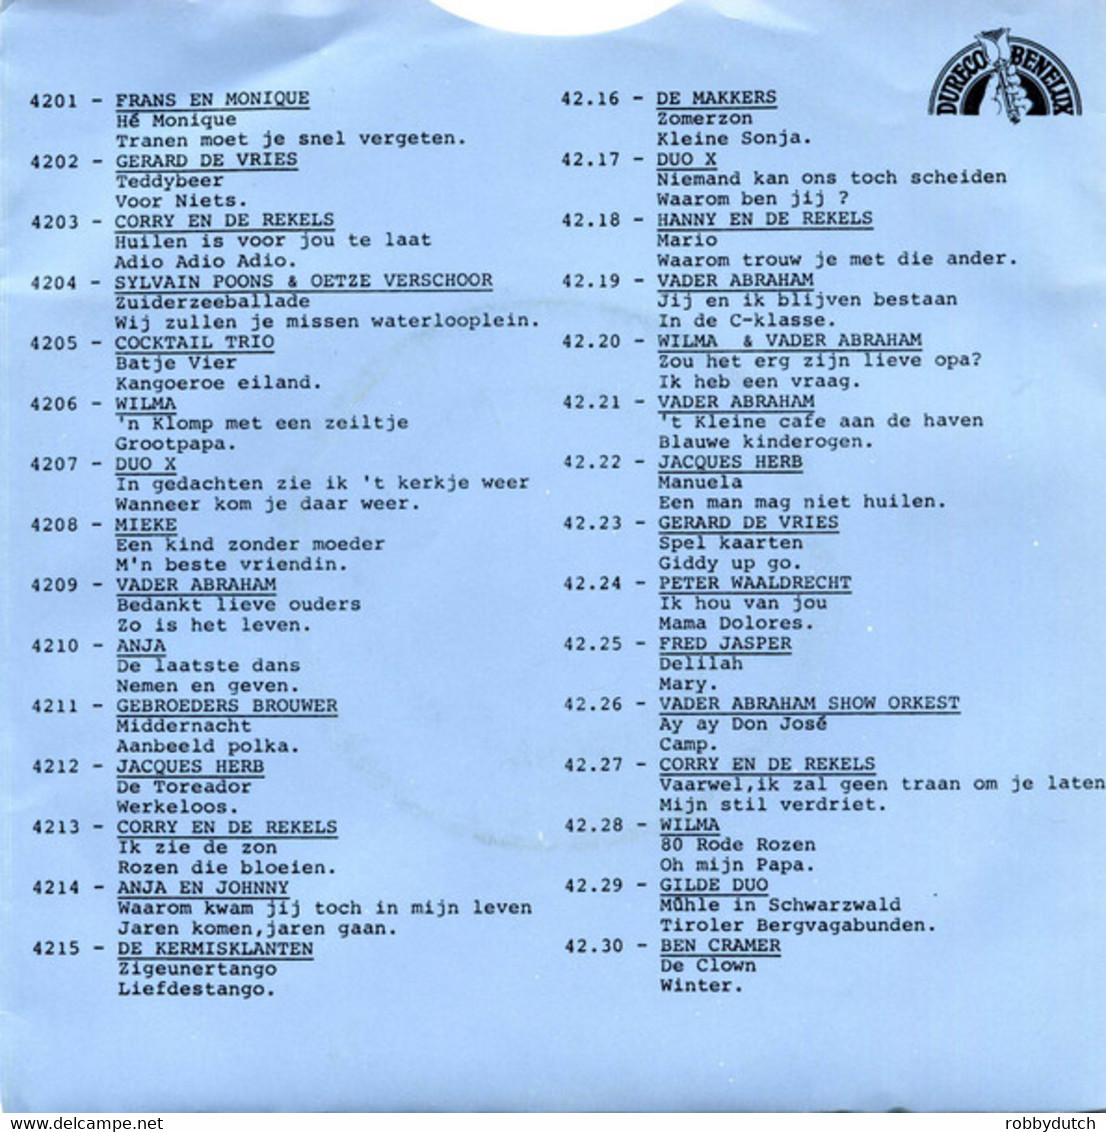 *7" * GERARD DE VRIES - SPEL KAARTEN (Holland 1976) - Andere - Nederlandstalig